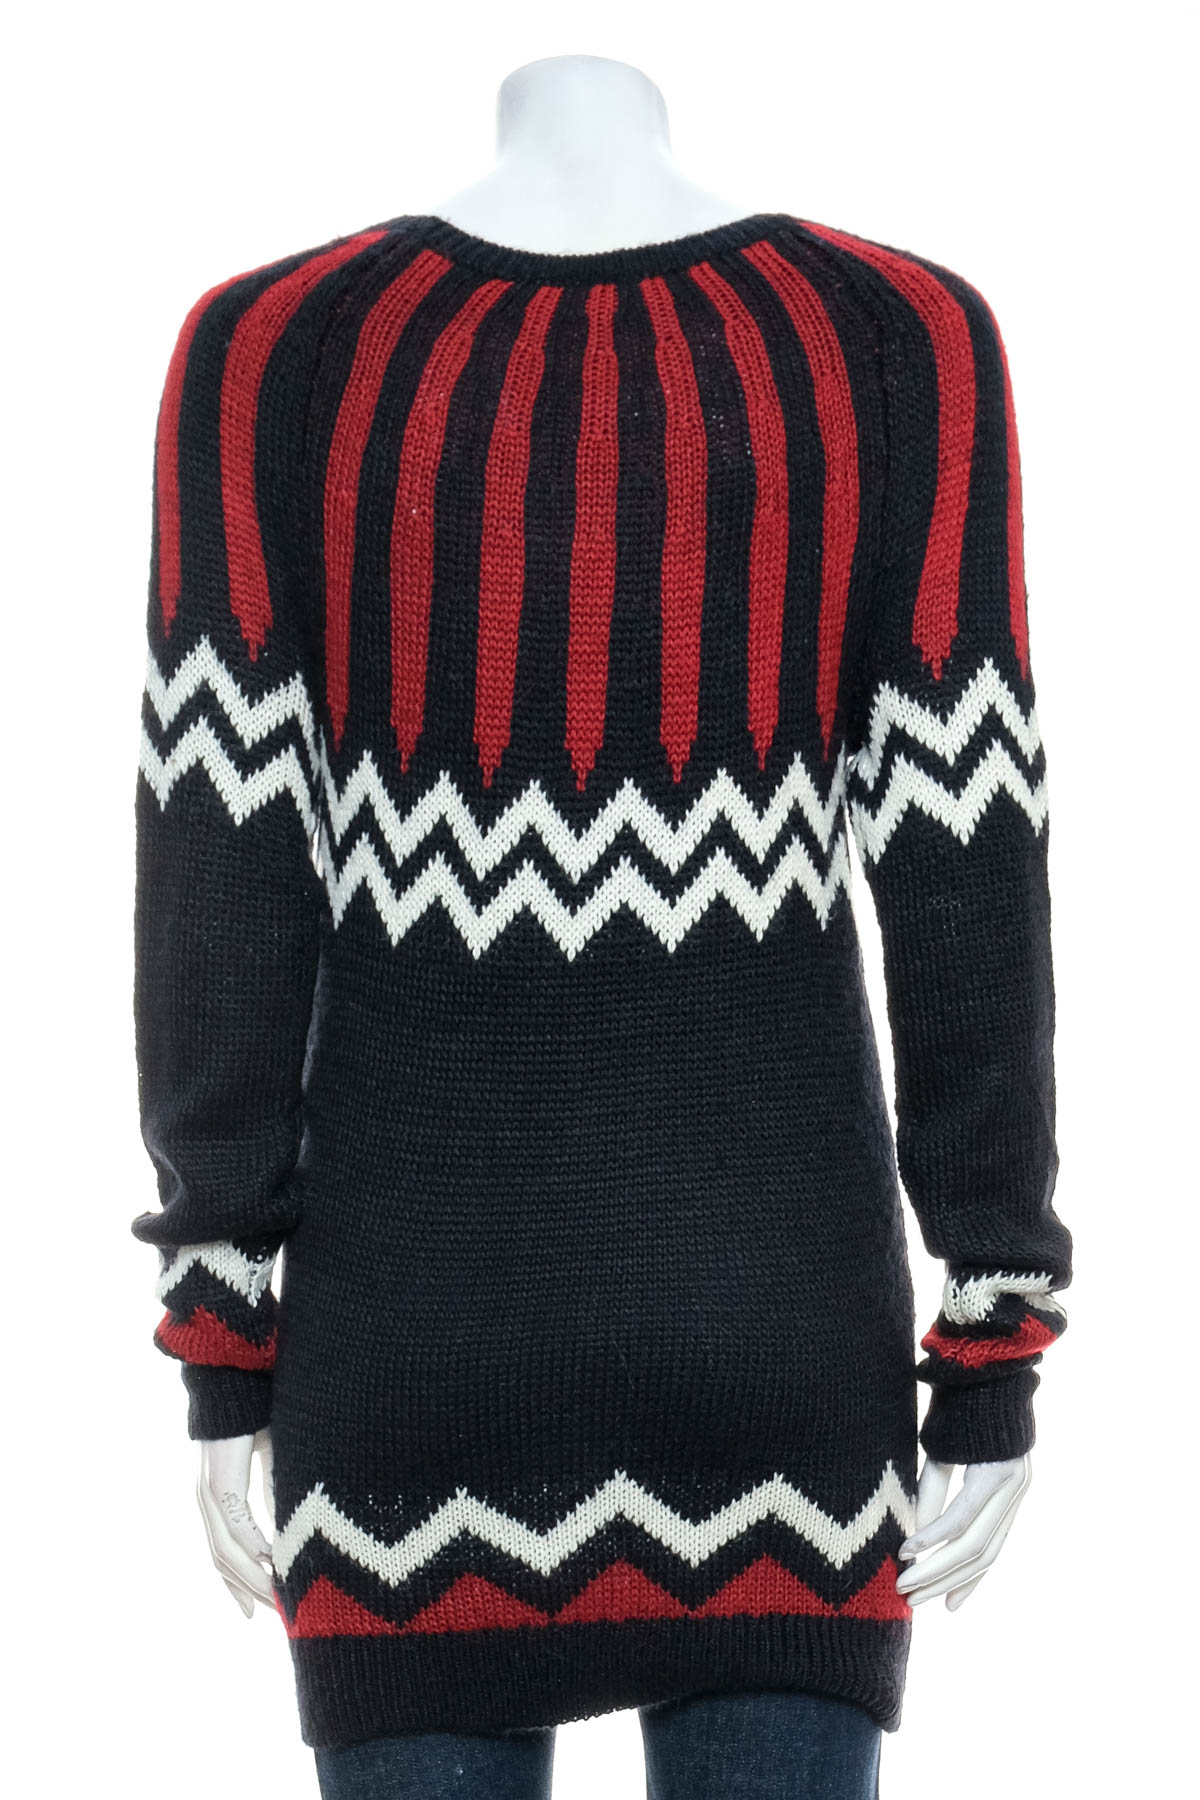 Women's sweater - GAP - 1